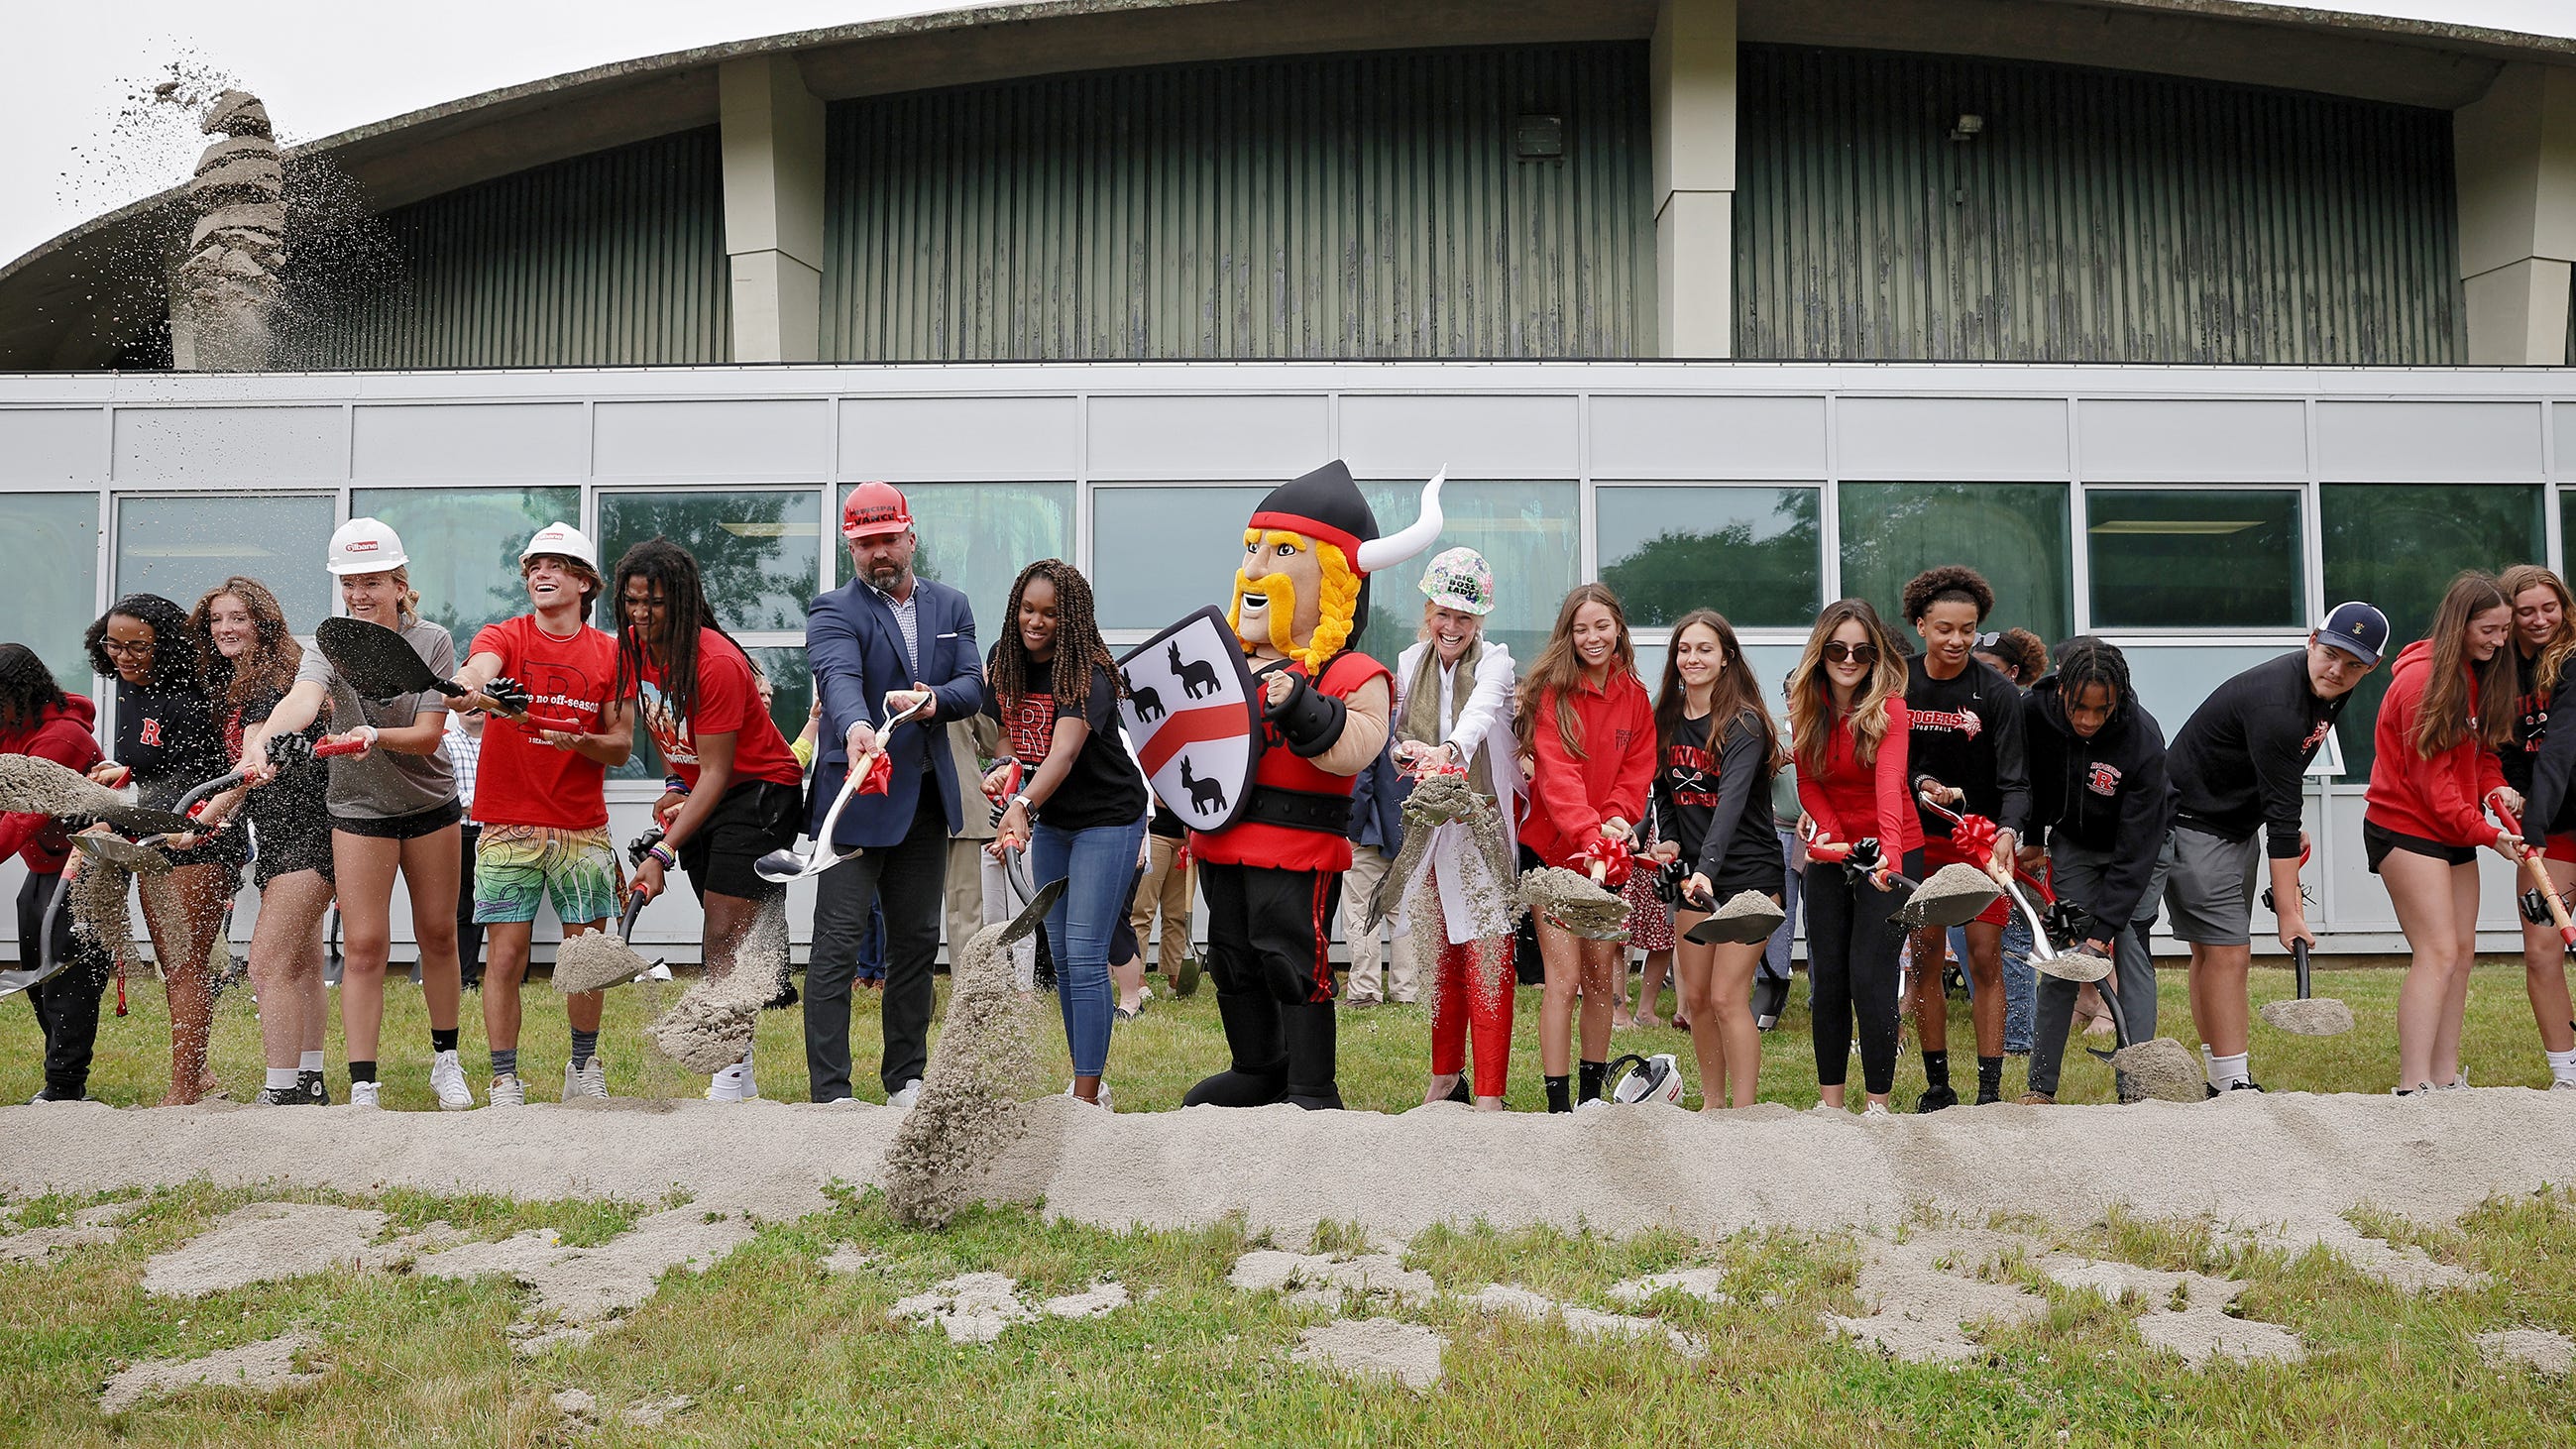 Newport RI: Rogers High School groundbreaking ceremony held